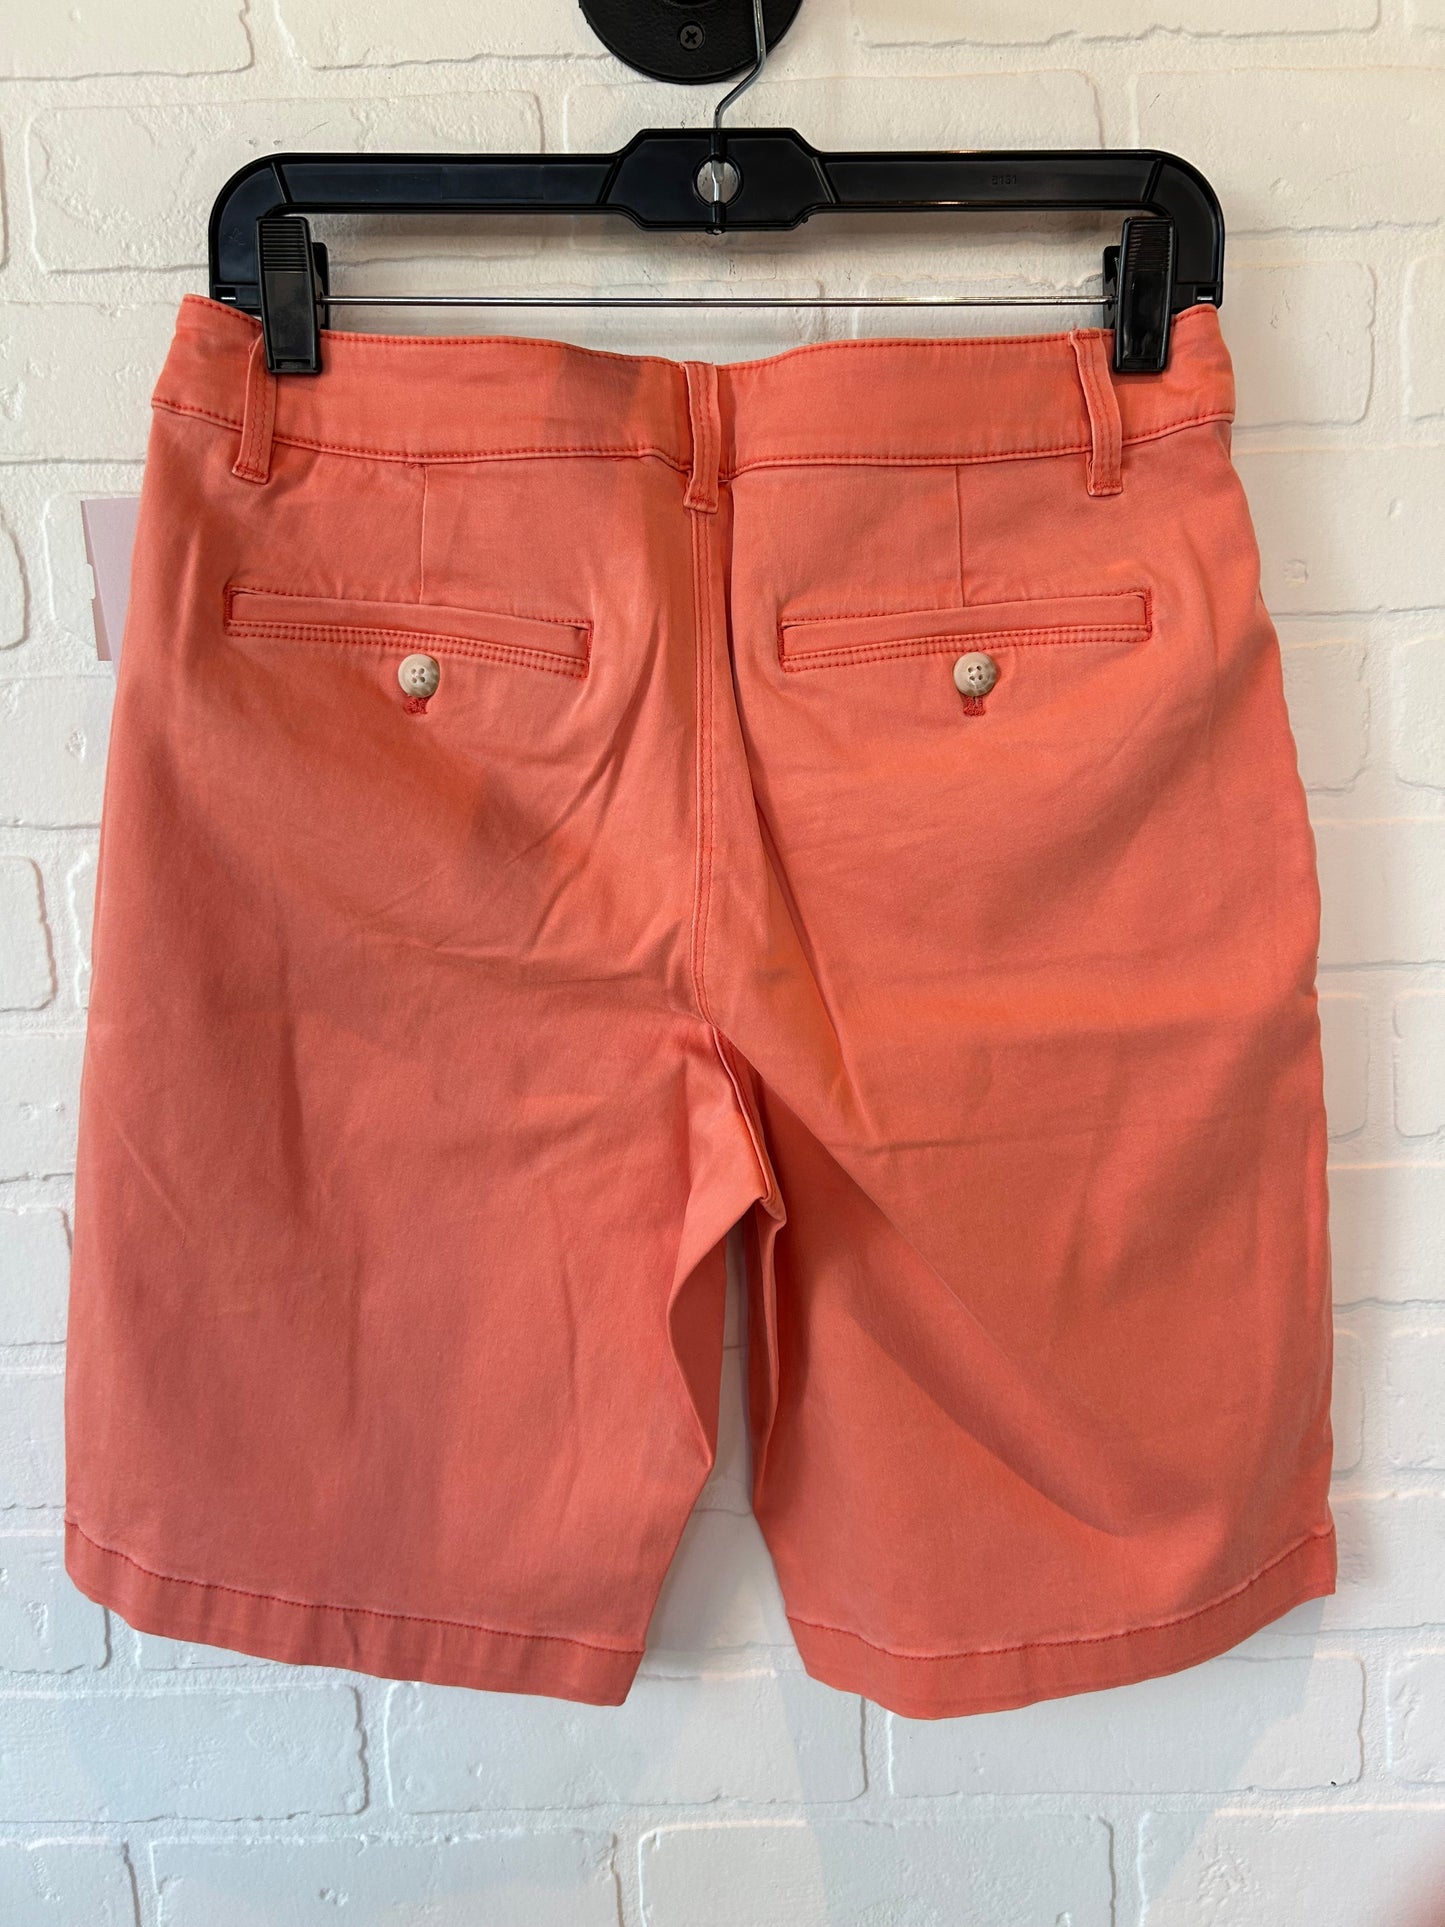 Orange Shorts Tommy Bahama, Size 6